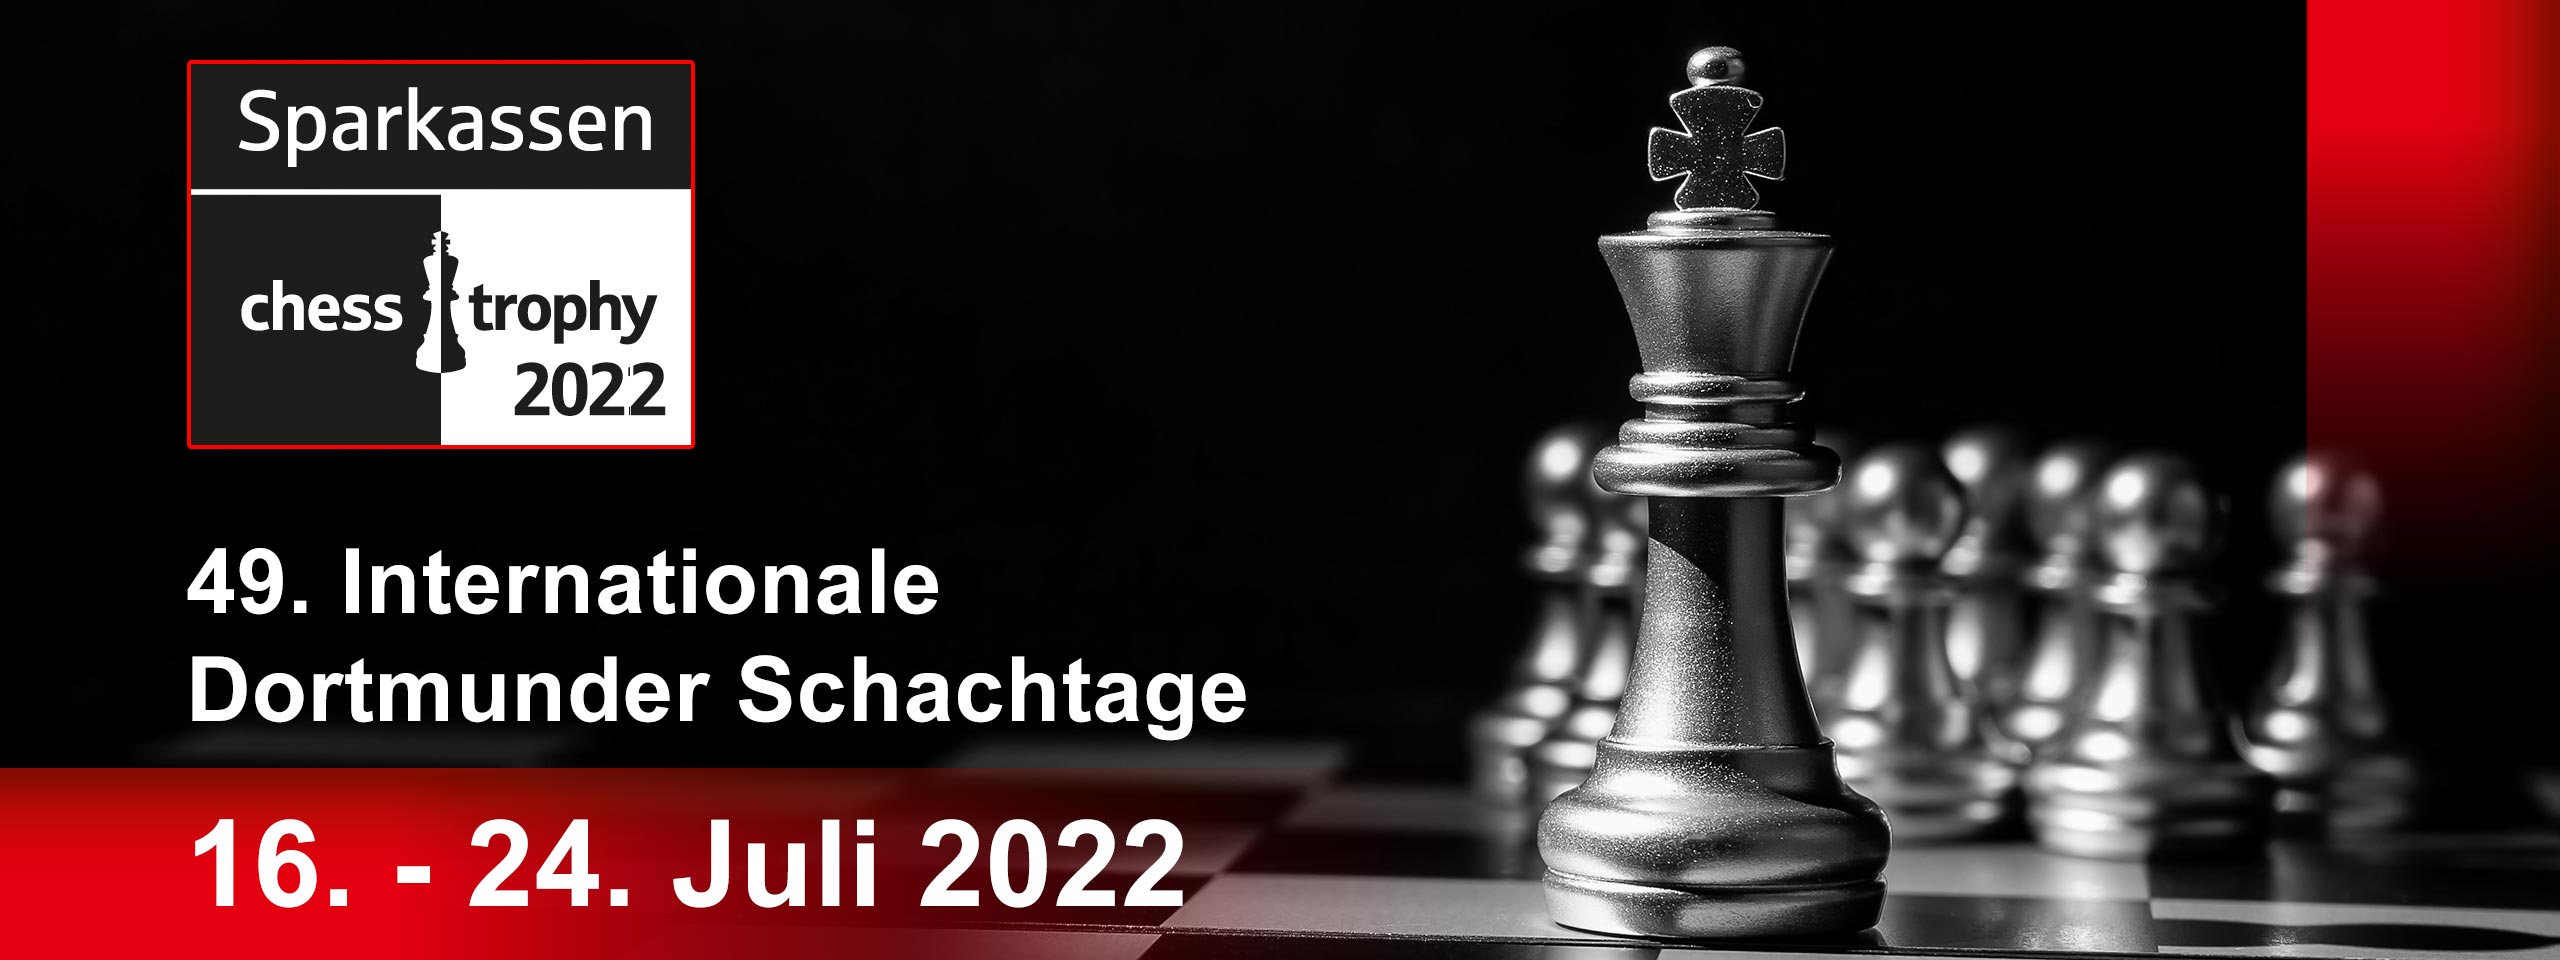 Sparkassen-Chess-Trophy 2022 - Deutscher Schachbund